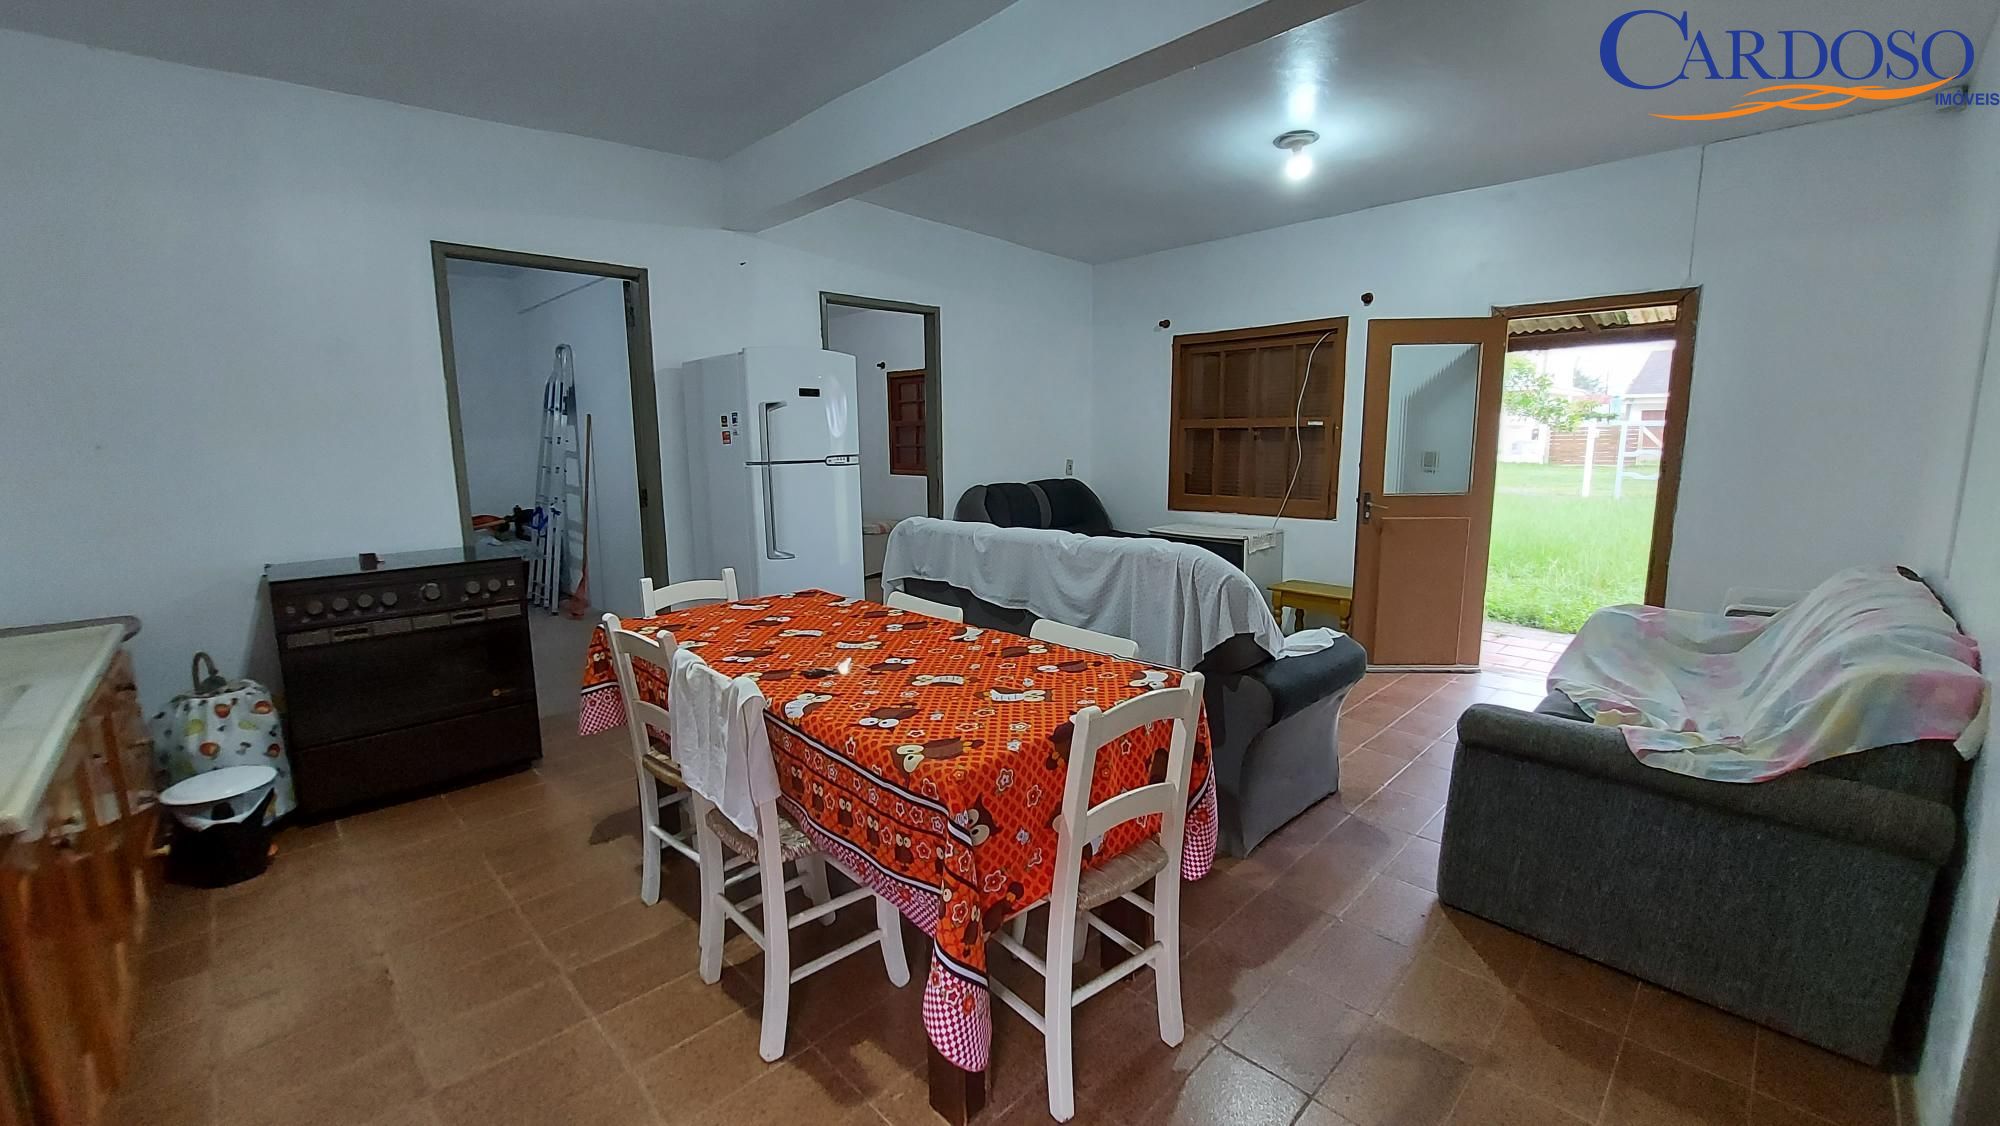 Casa com 3 Dormitórios à venda, 84 m² por R$ 200.000,00